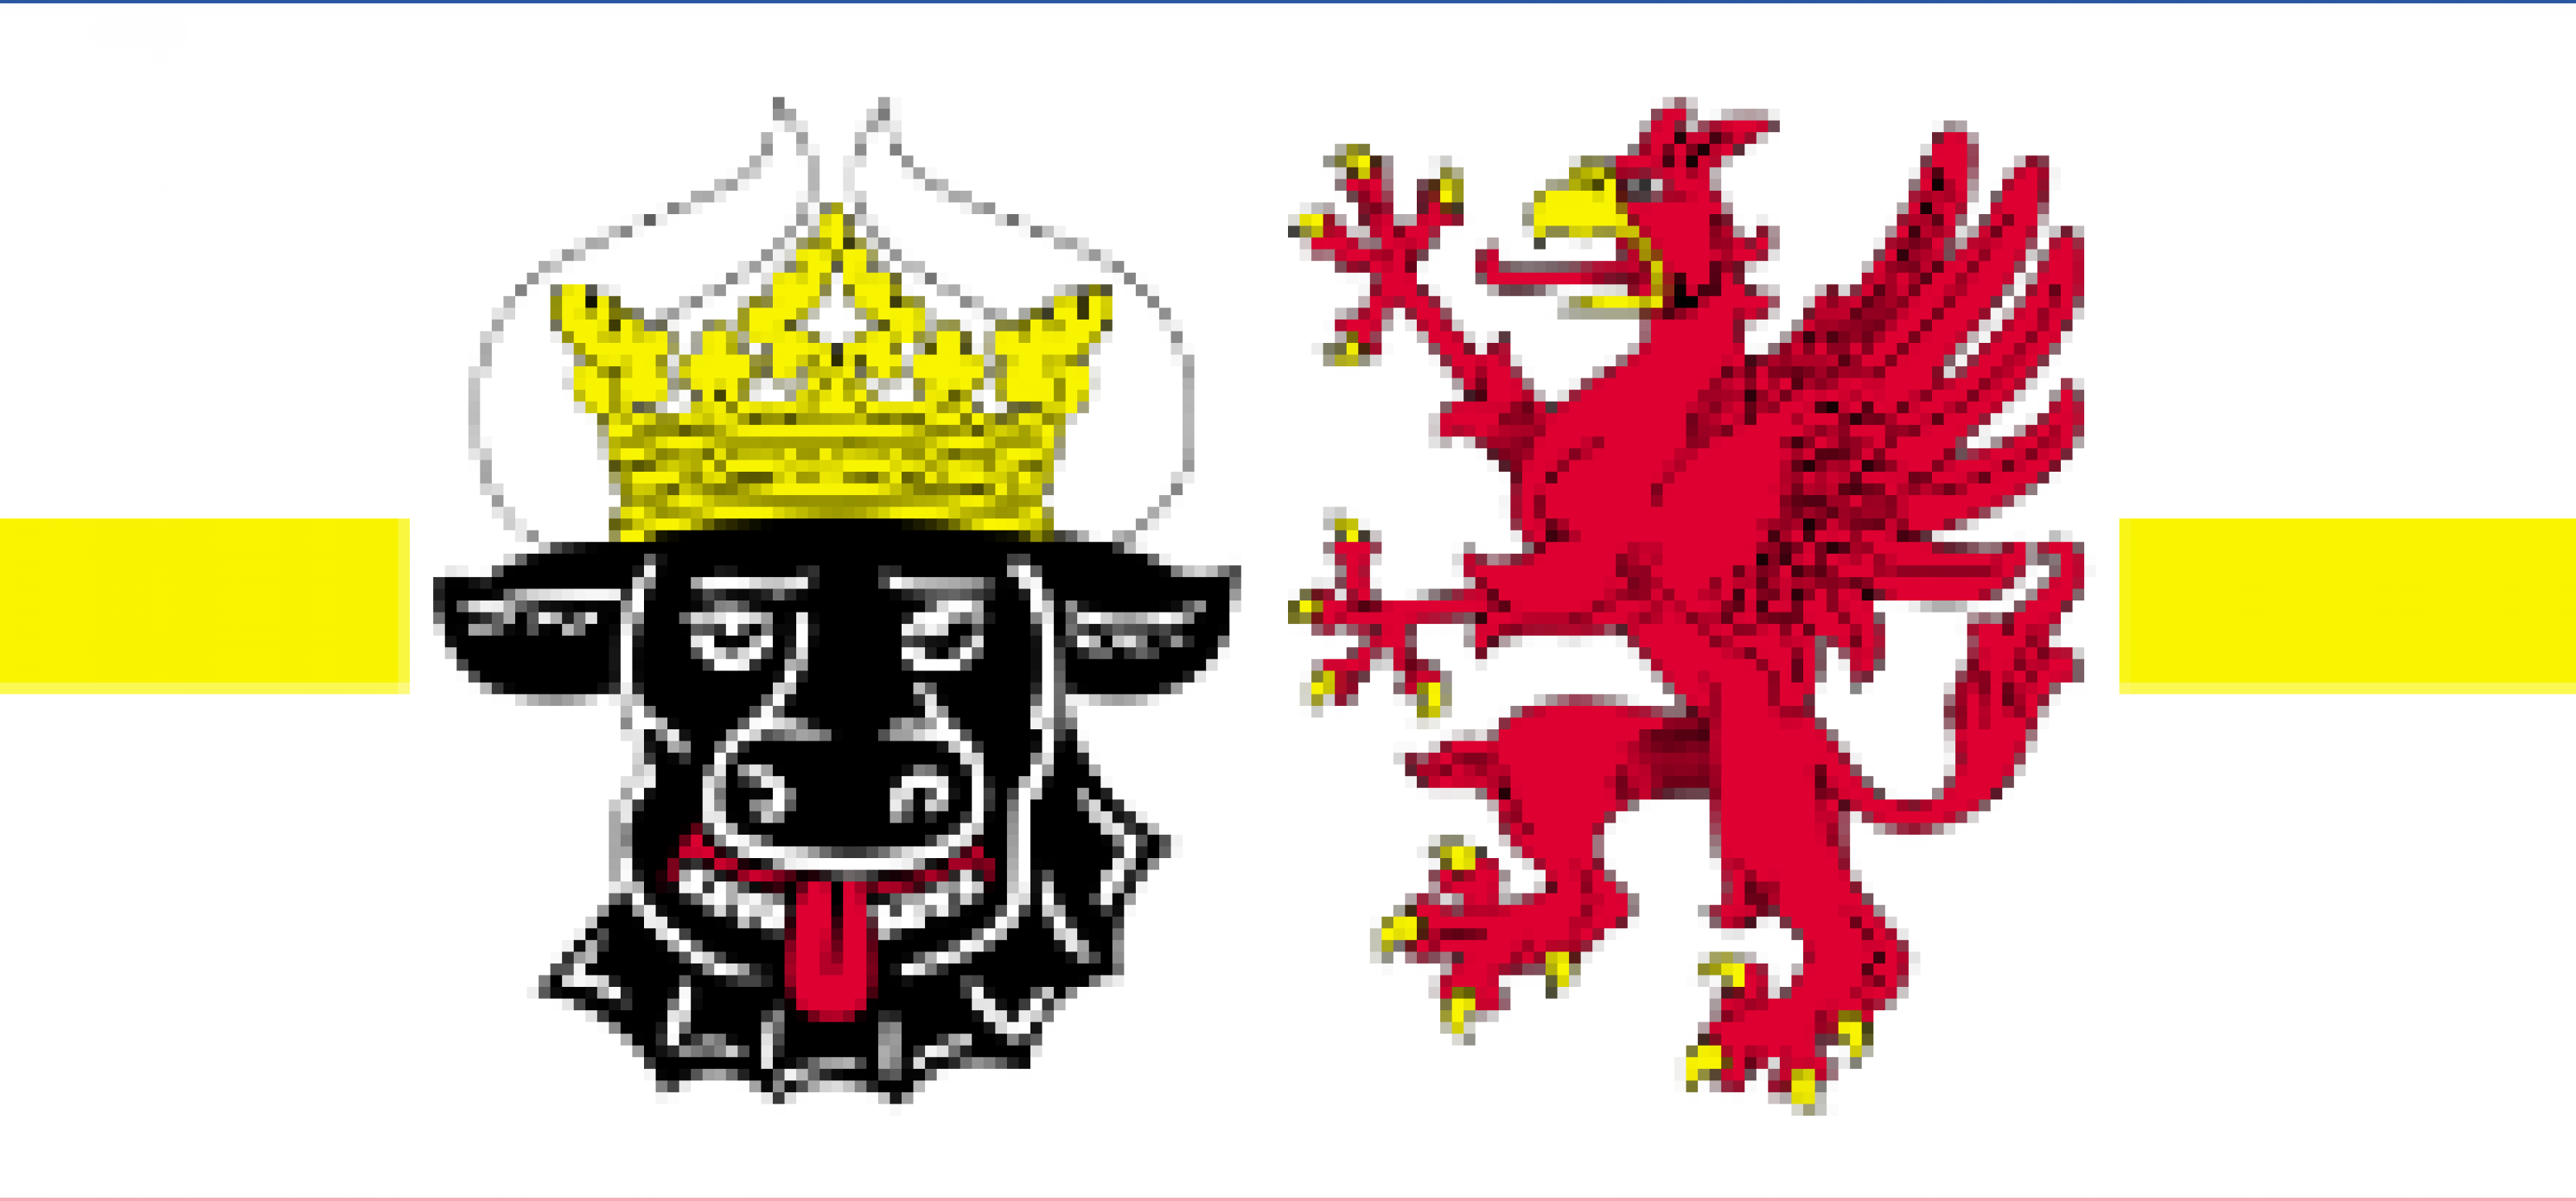 Landesflagge Mecklenburg-Vorpommern